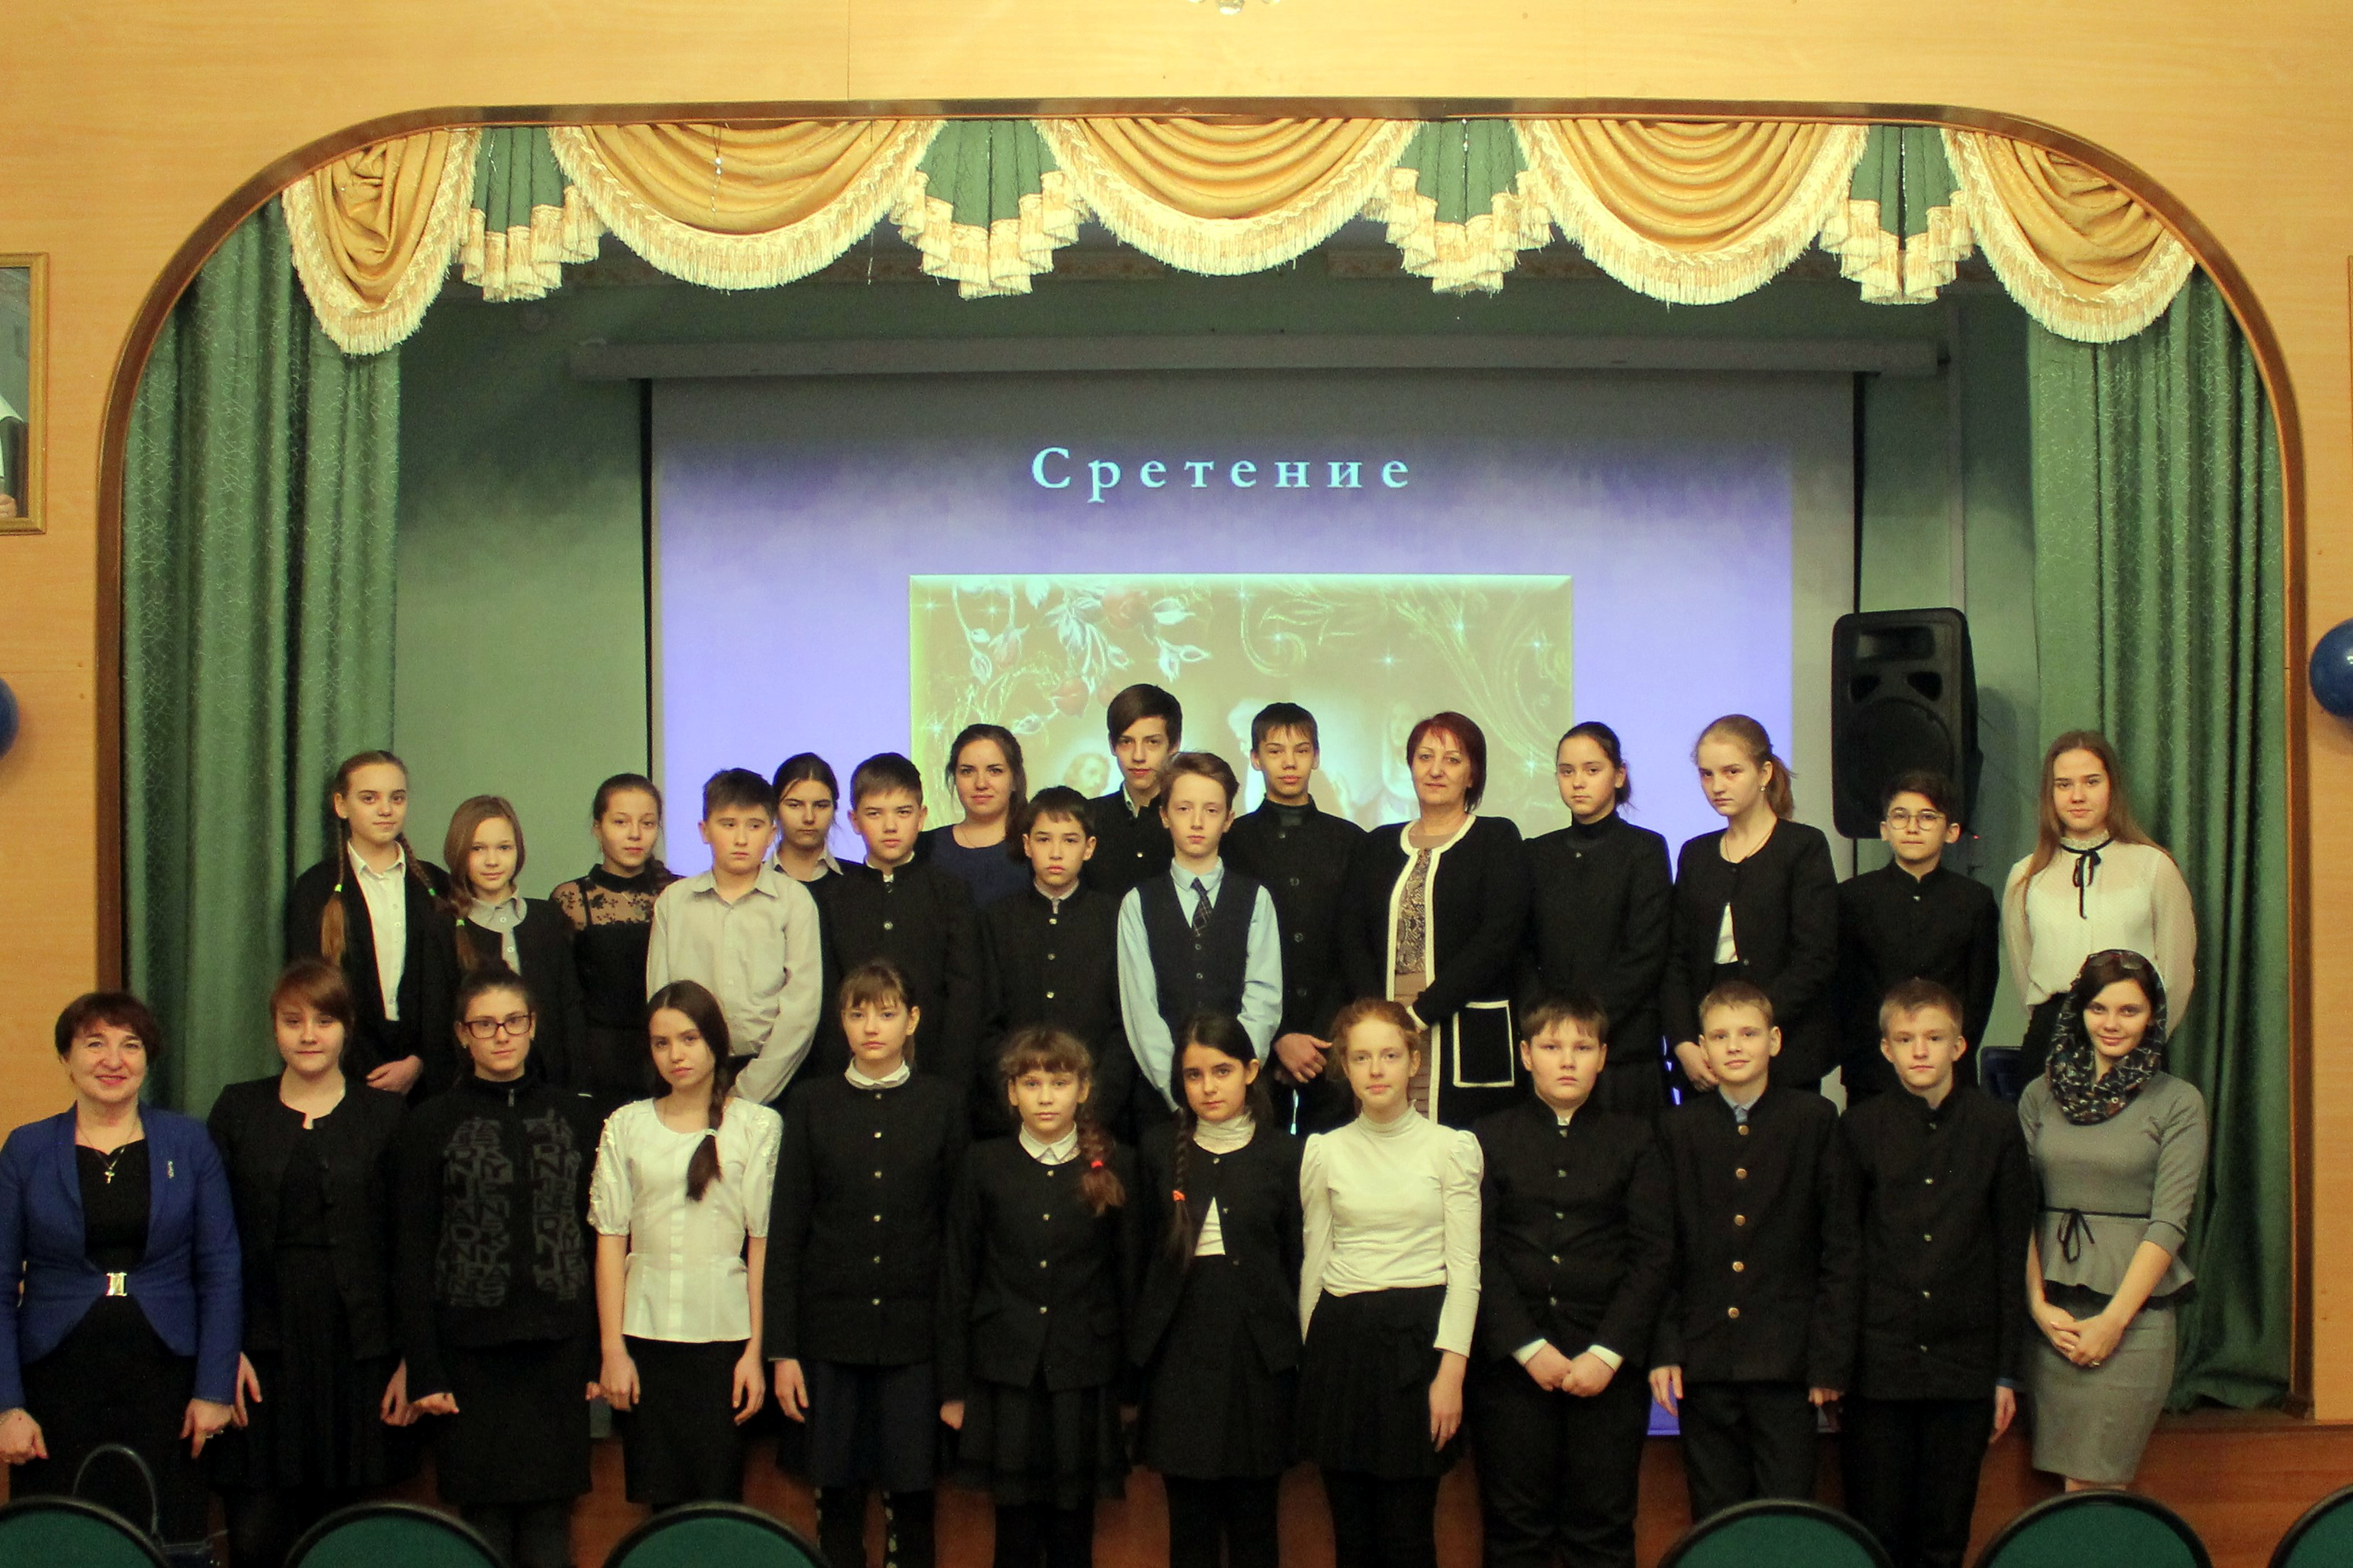 Праздник Сретения Господня для учащихся школы в честь прп. Сергия Радонежского